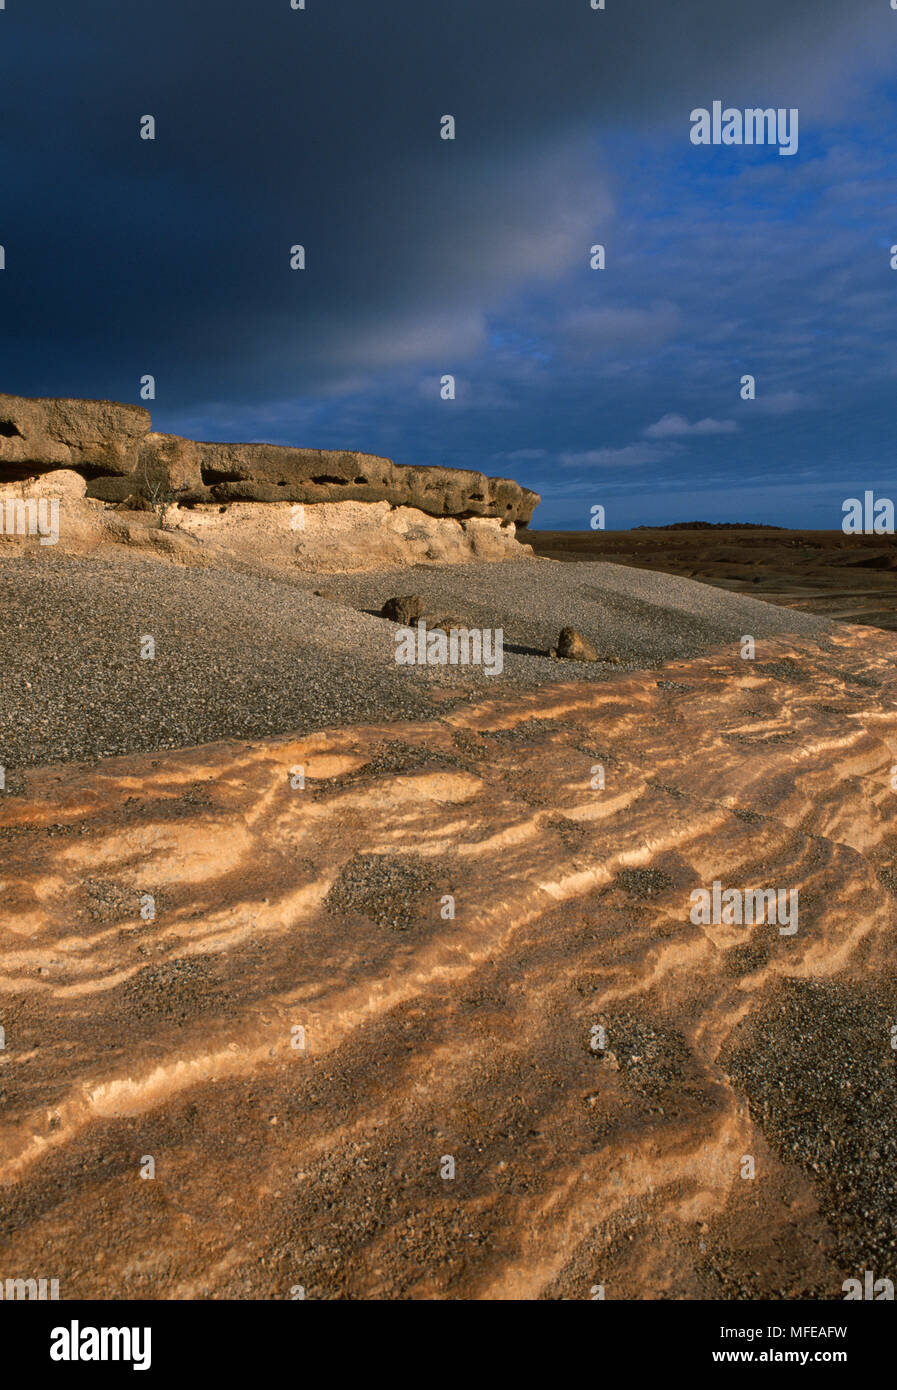 Del DIAVOLO scuola di equitazione antico cratere del lago con sedimenti esposti, Isola di Ascensione, Oceano Atlantico Foto Stock